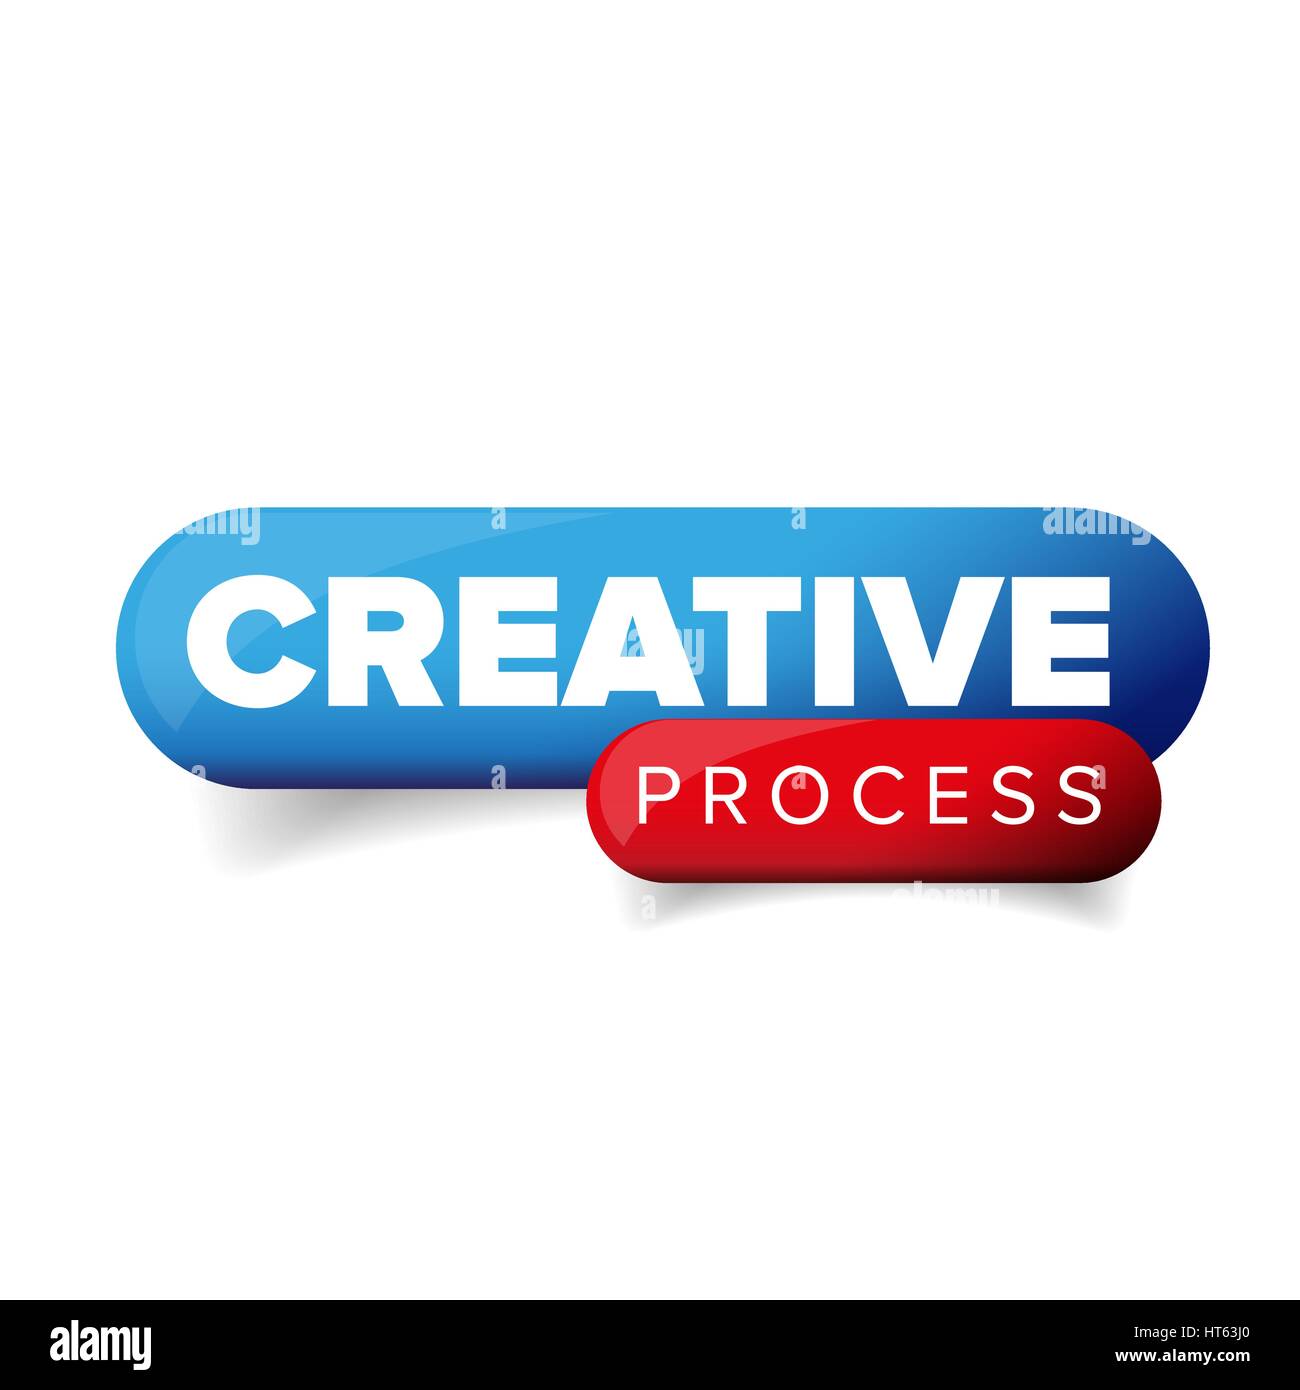 Creative Process vector button Stock Vector